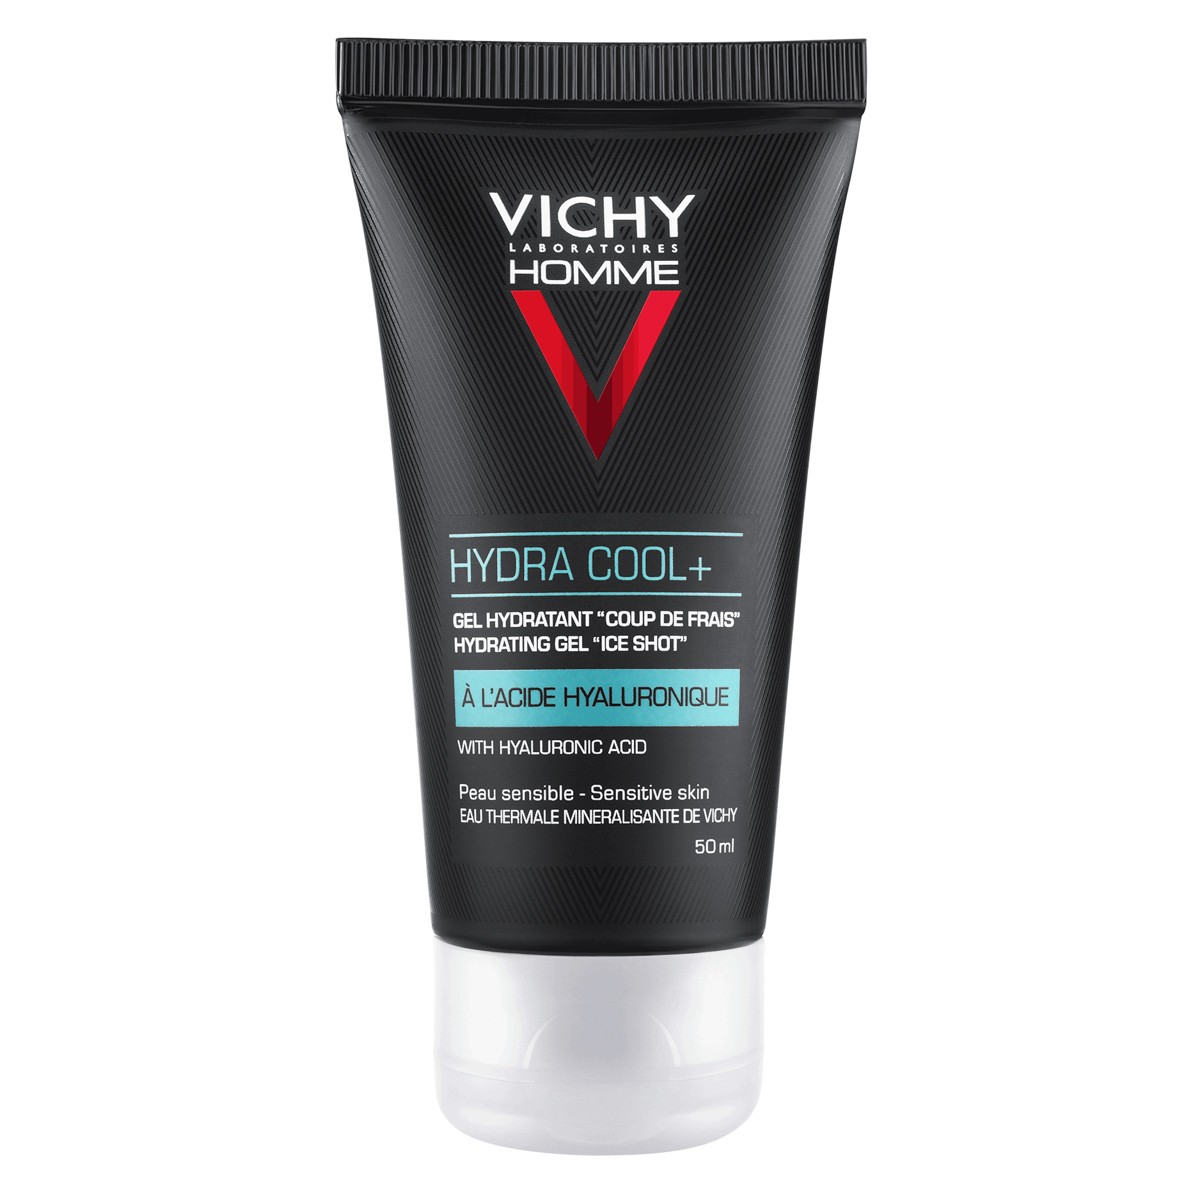 Vichy Homme hydra cool+ gel hidratante 50ml